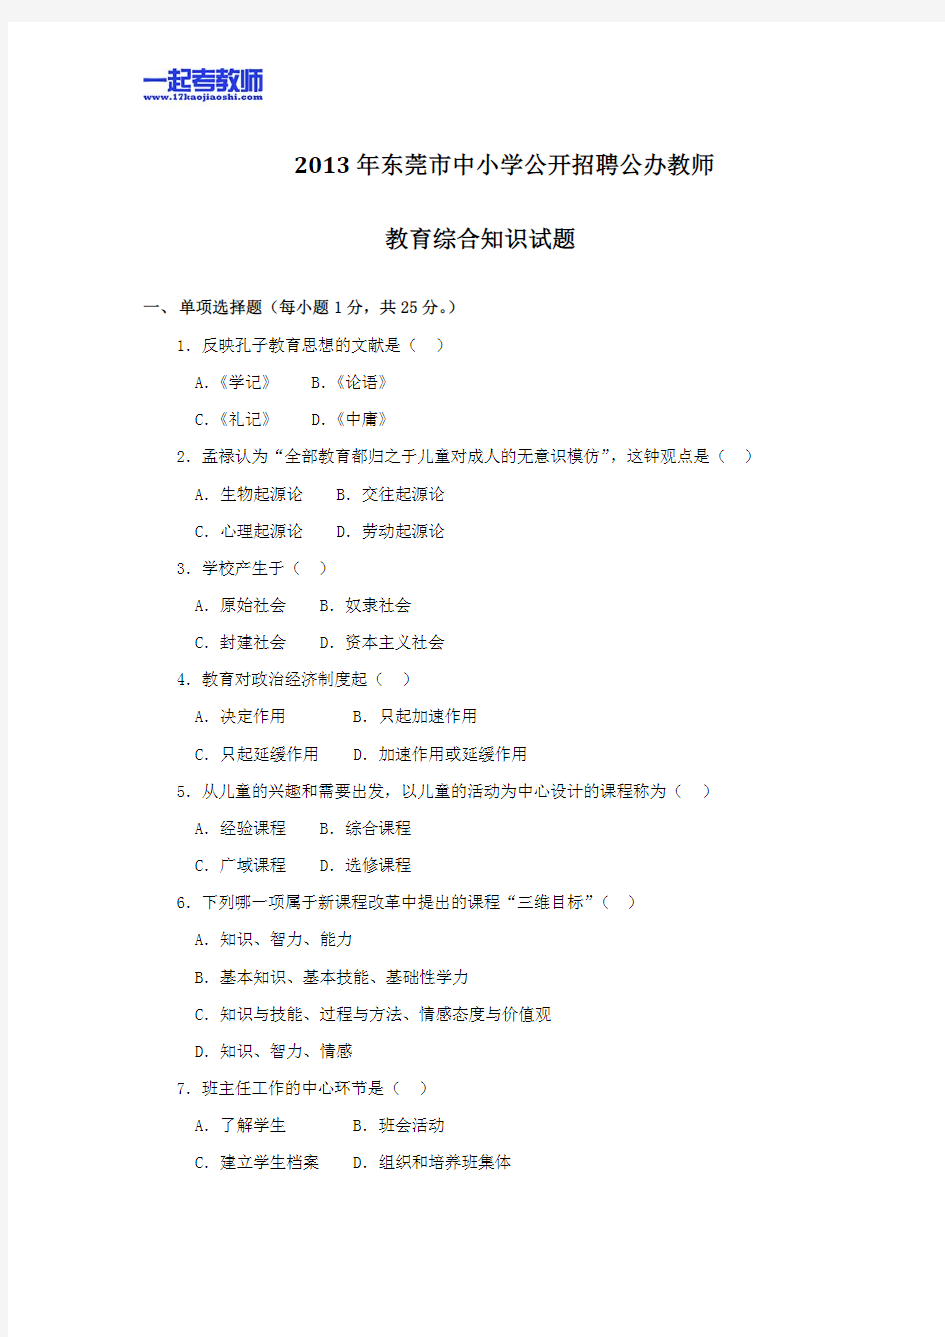 2013年广东省东莞市教师招聘考试笔试教育综合真题答案解析